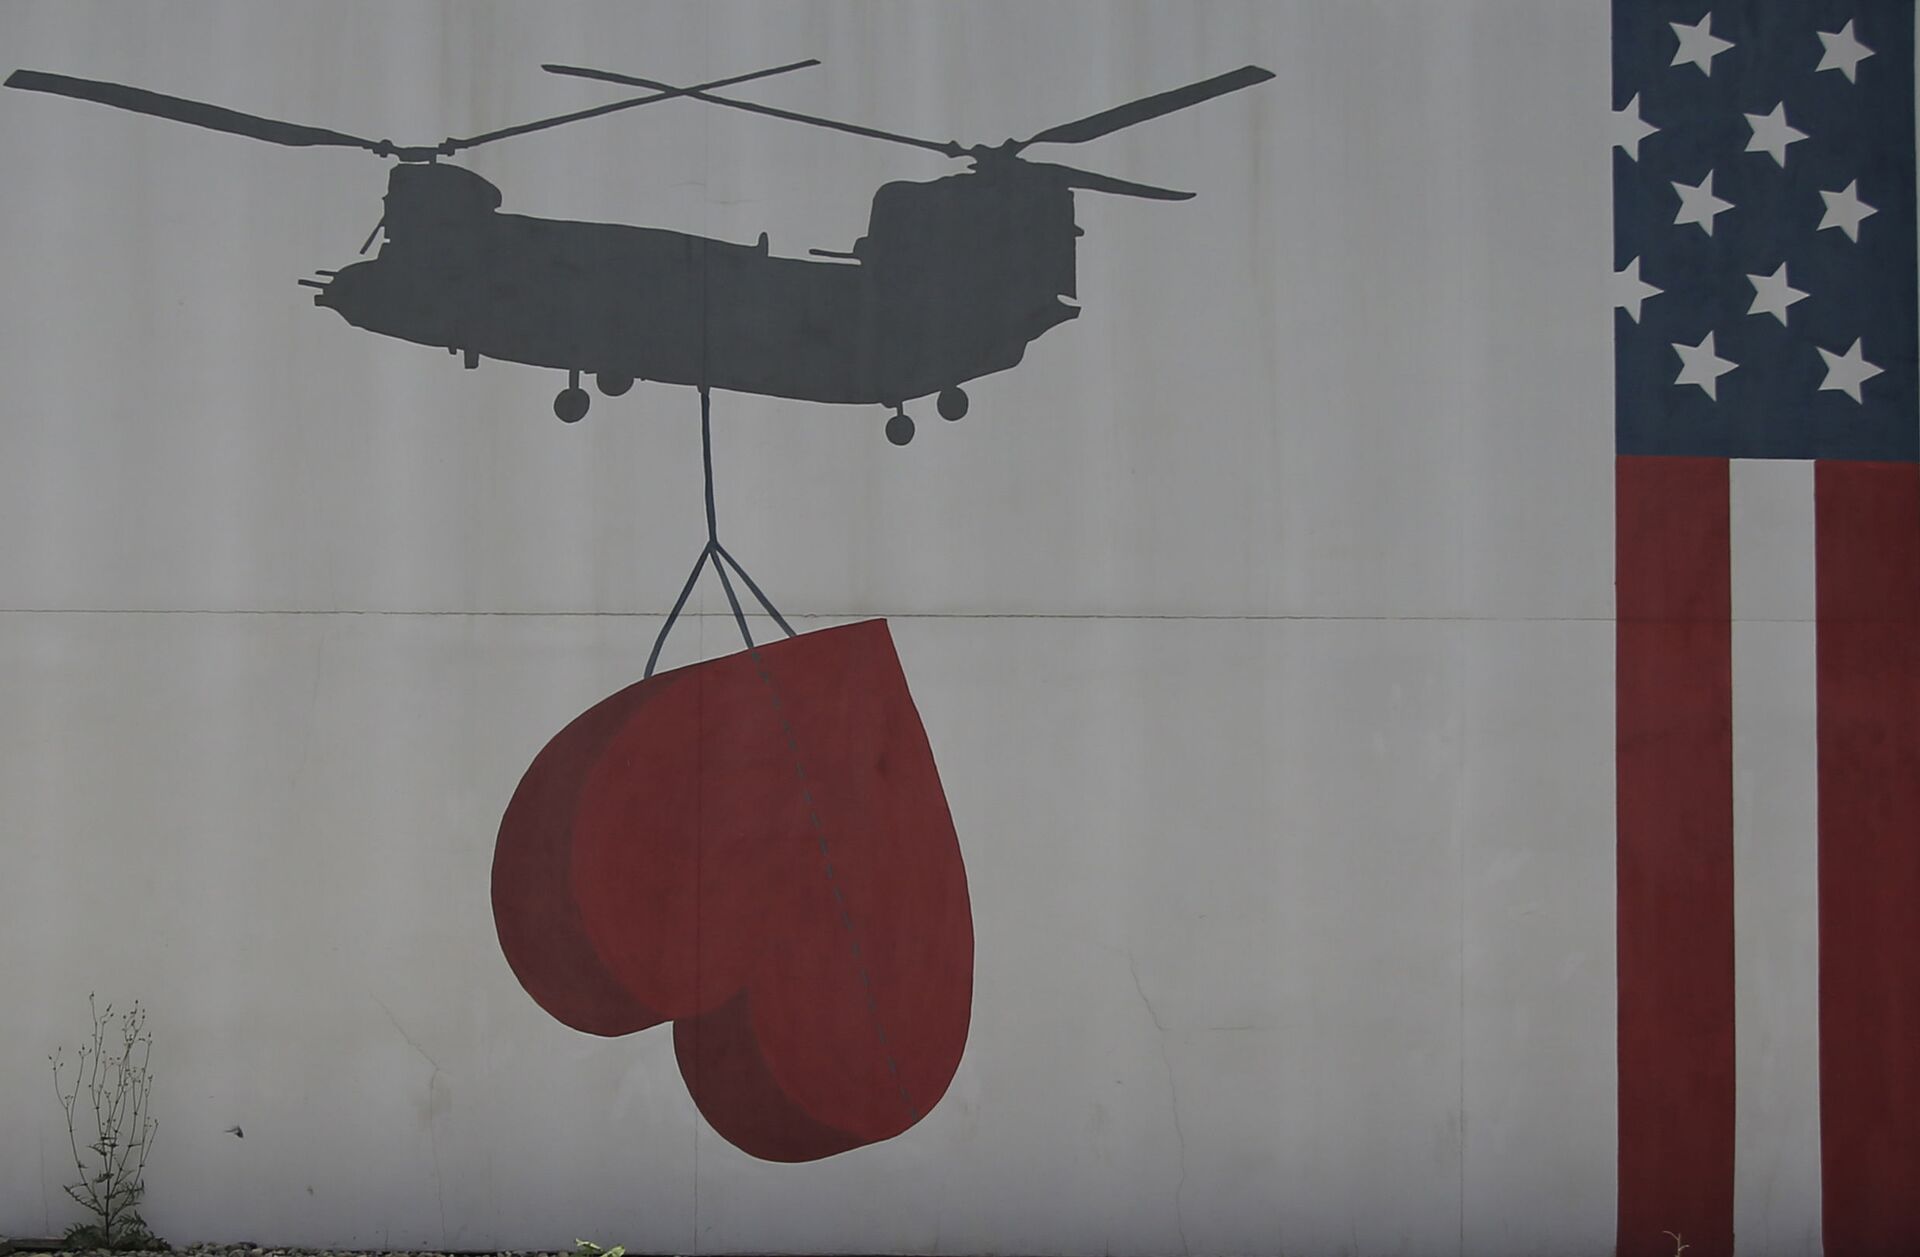 Quốc kỳ Hoa Kỳ được sơn trên tường tại Đại sứ quán Hợp chủng quốc Hoa Kỳ ở Kabul, Afghanistan, Thứ Sáu, Tháng Bảy. Ngày 30 năm 2021. - Sputnik Việt Nam, 1920, 05.10.2021